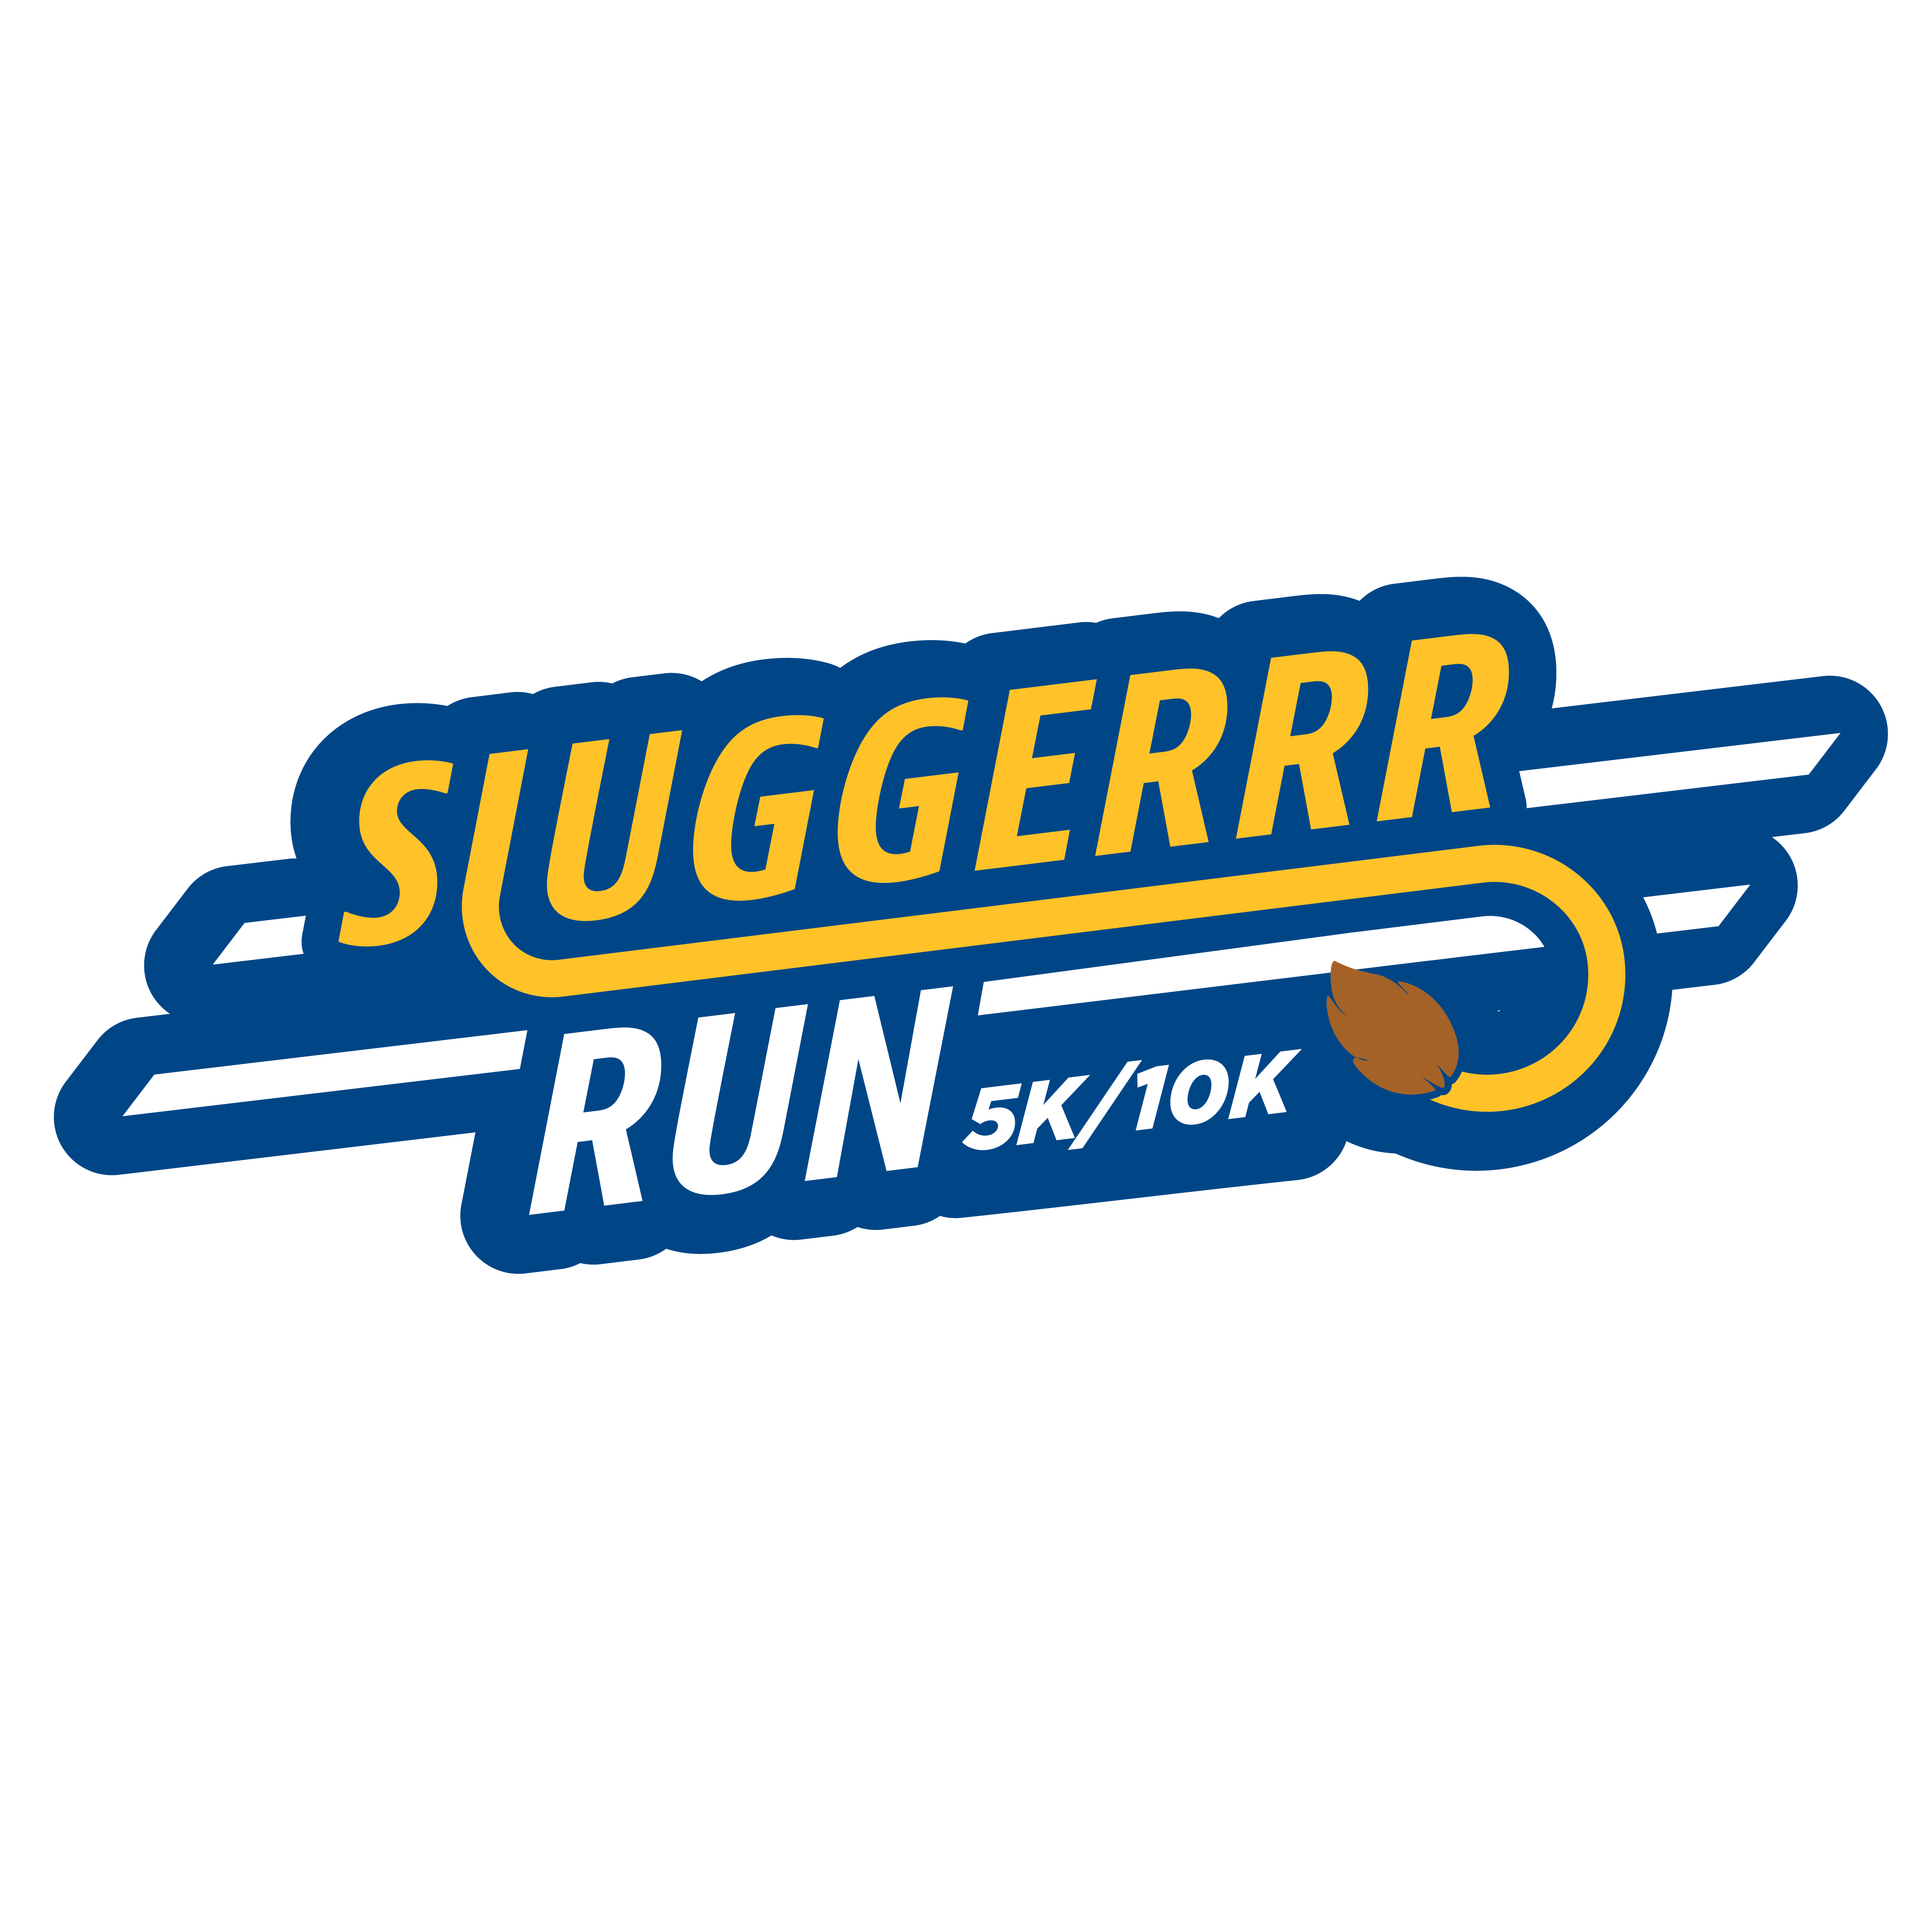 Sluggerrr Run 5K & 10K logo on RaceRaves